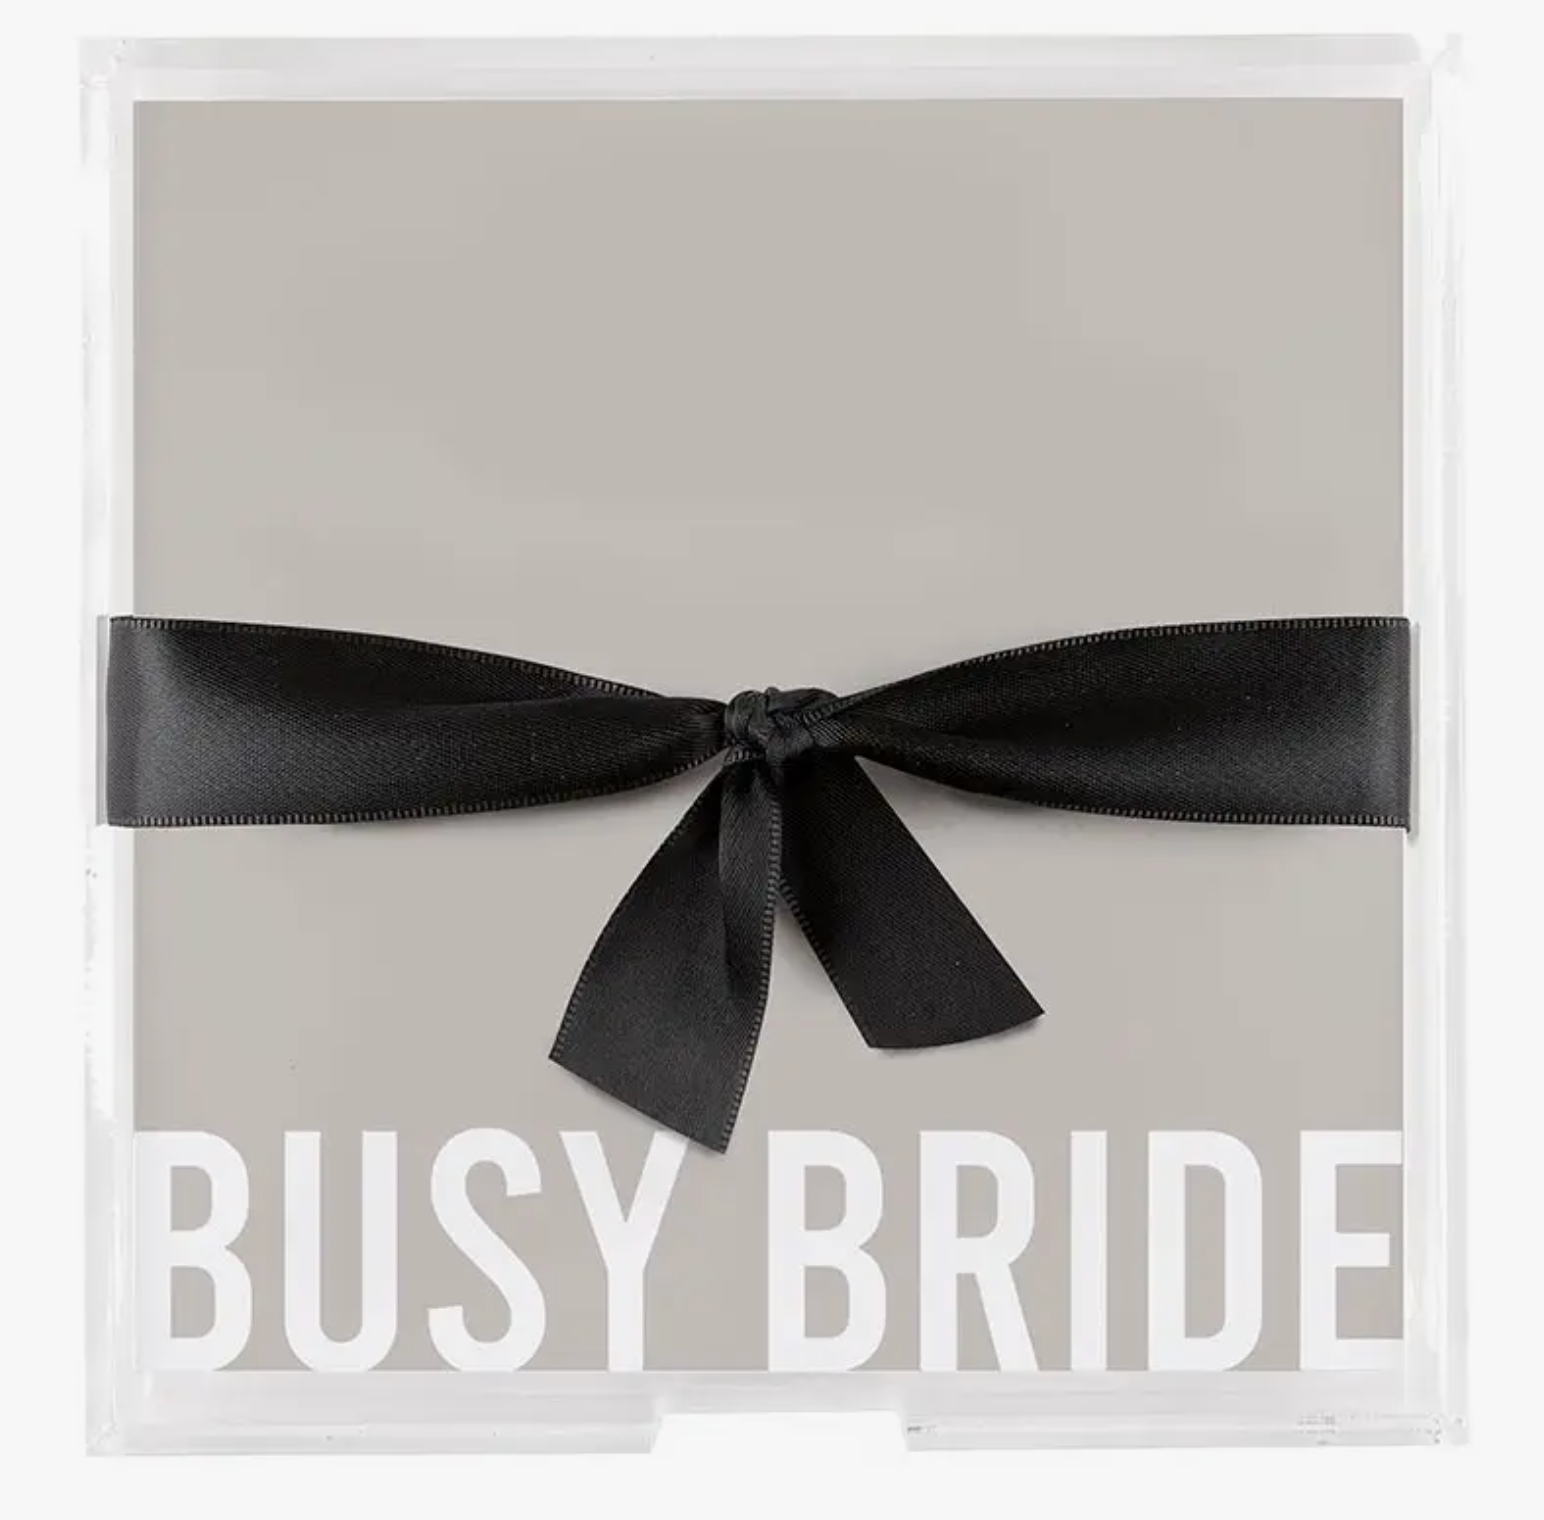 Acrylic Tray + Busy Bride Paper